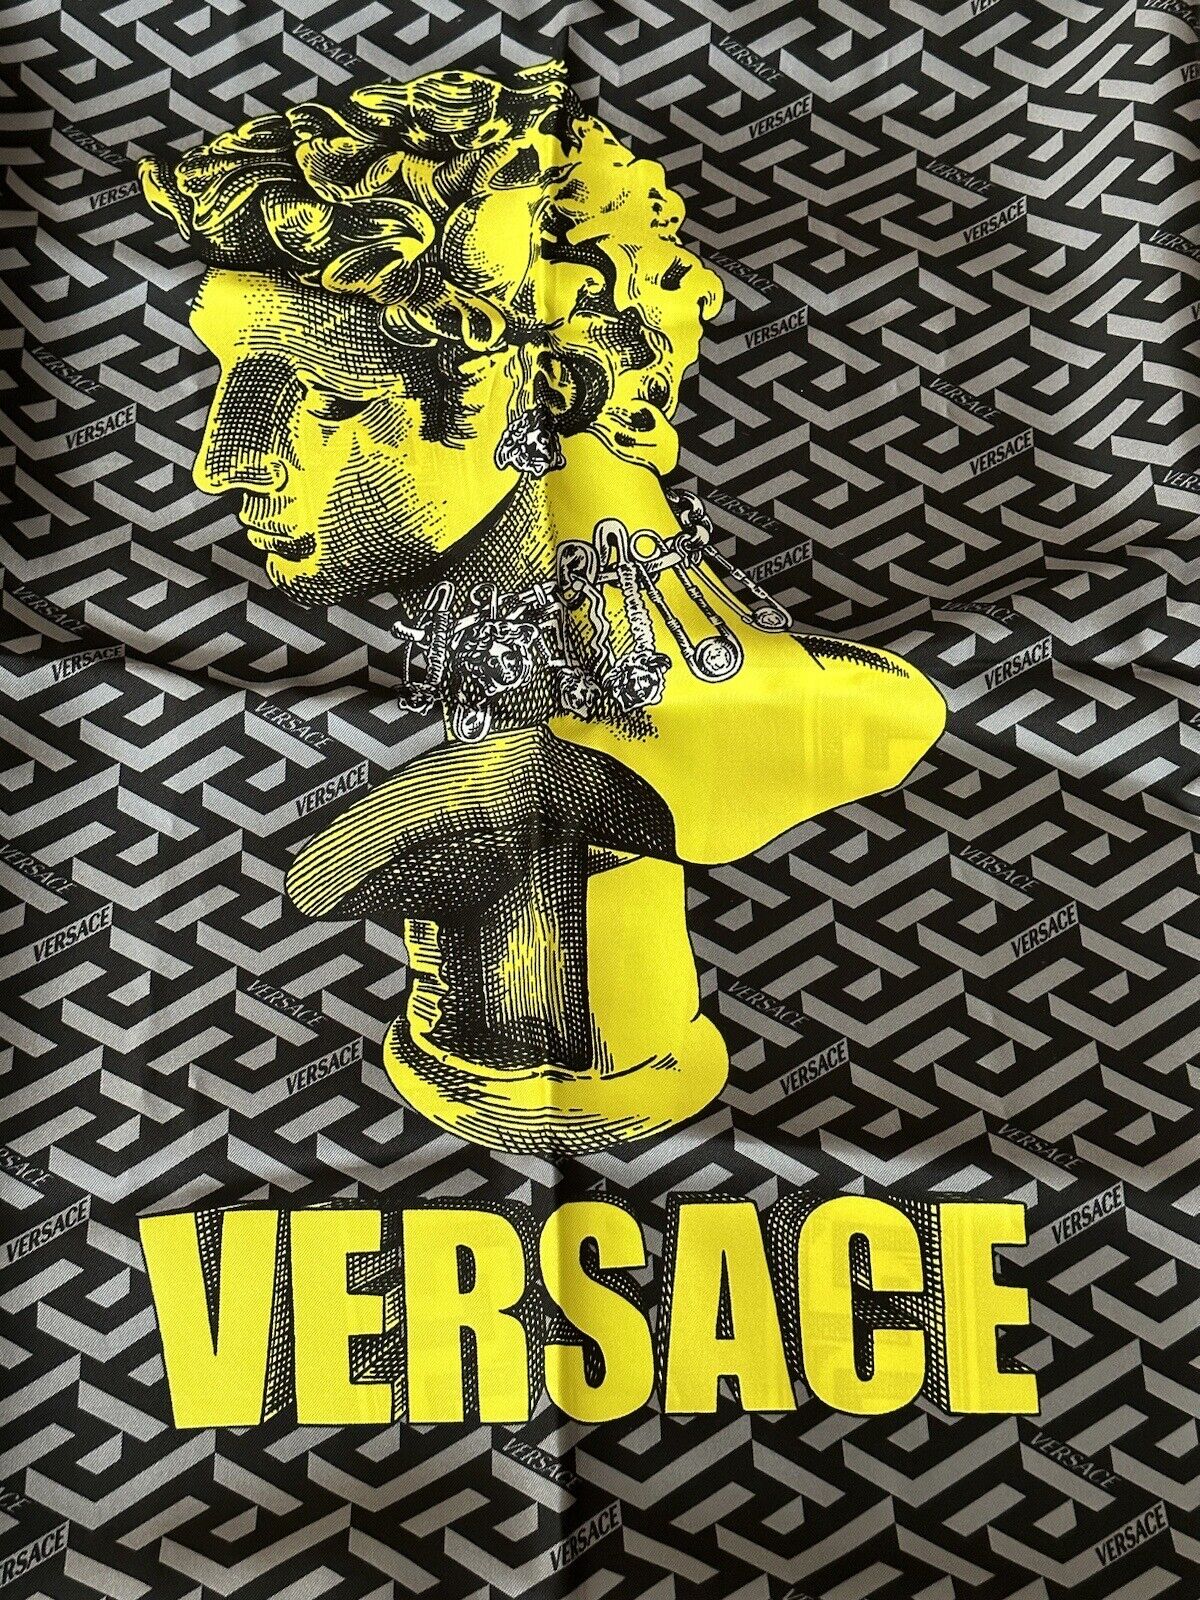 Новый шарф Versace из шелкового твила с логотипом «греческий ключ» размером 35,5 x 35,5 дюйма IT 1001600 за 875 долларов США.